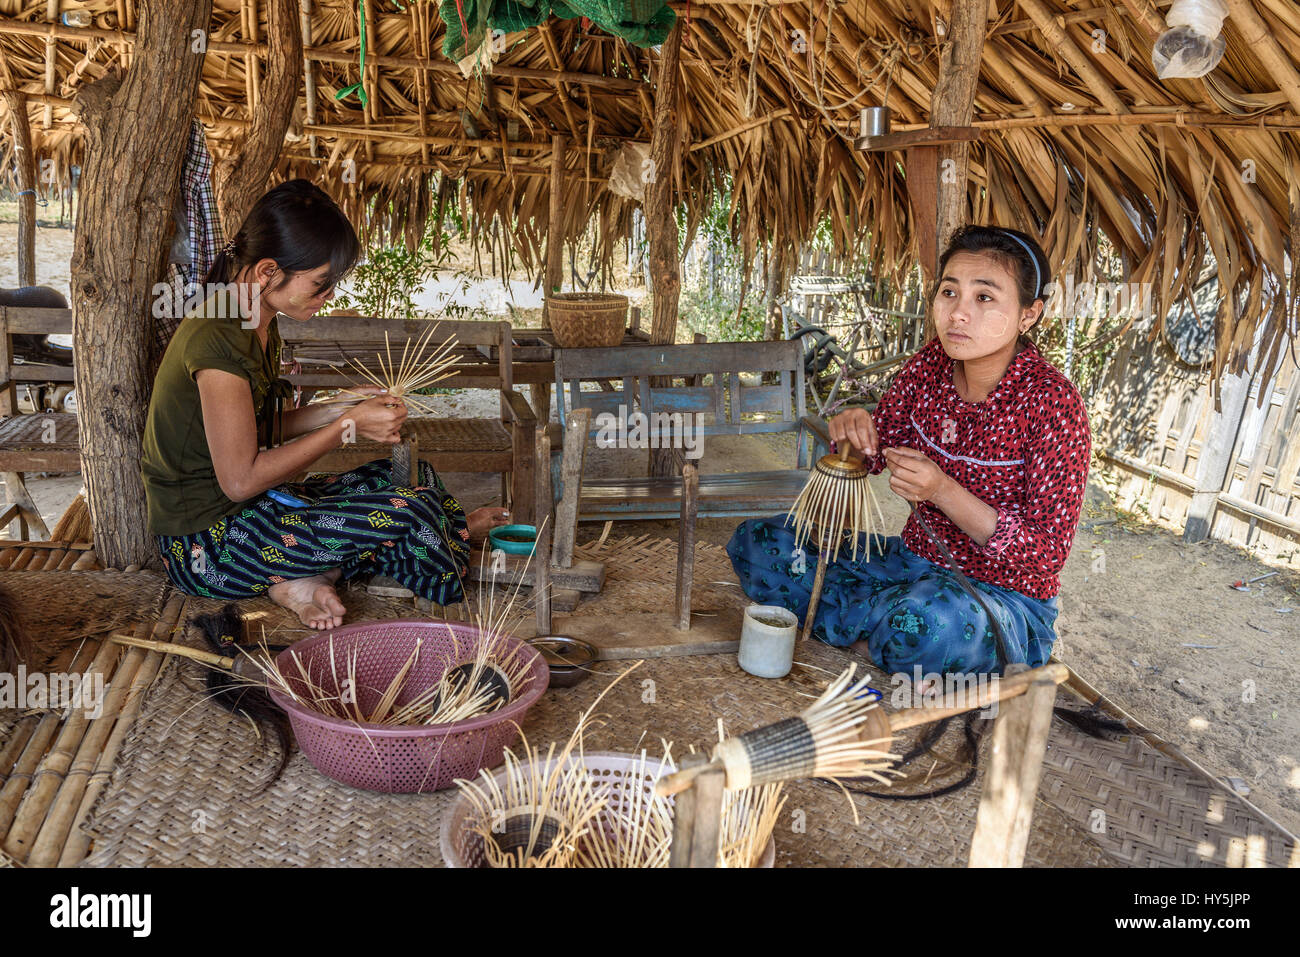 BAGAN, MYANMAR - 24 janvier 2016 : deux femmes birmanes des paniers à l'extérieur Banque D'Images